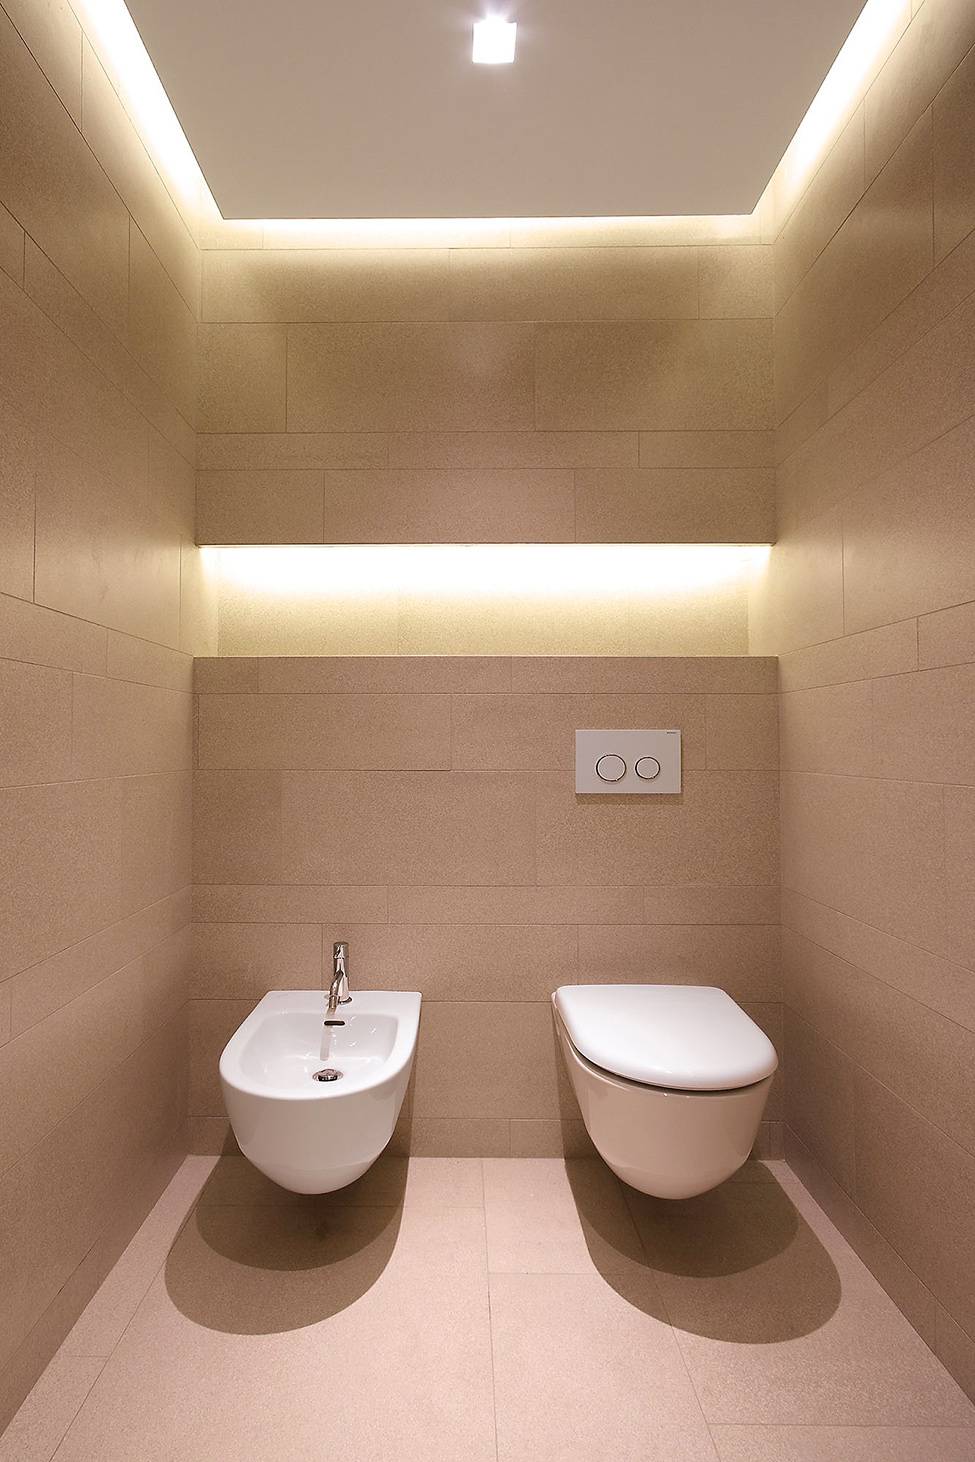 Какие светильники лучше для ванной?